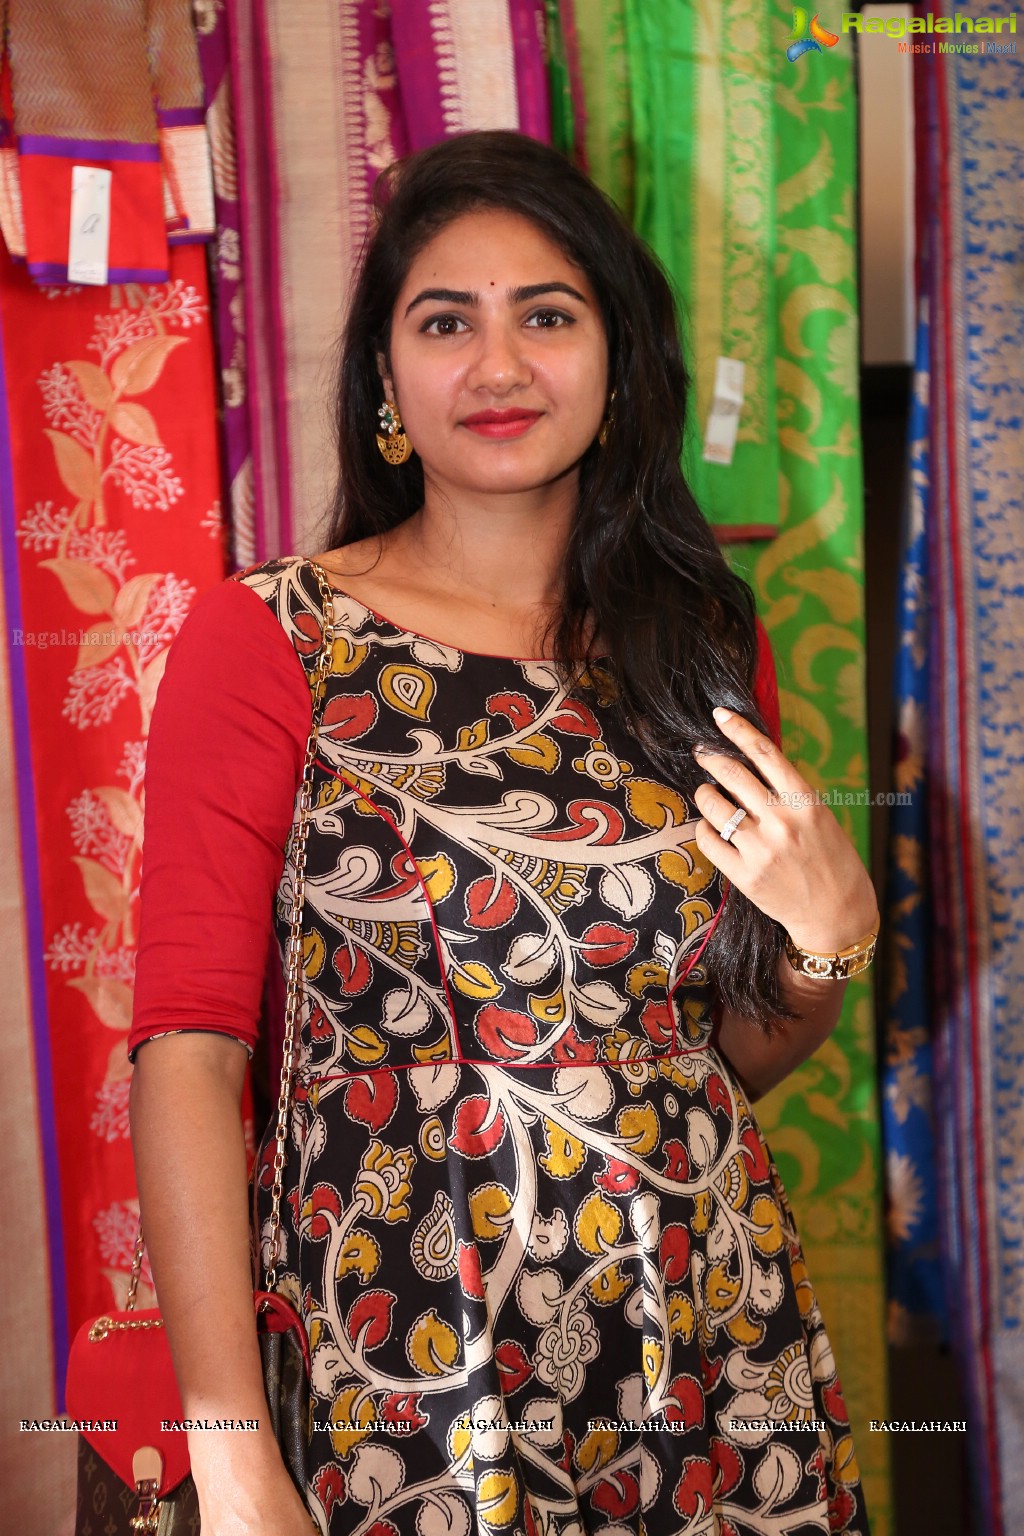 Sarees Expo by Abha Dalmia at Park Hyatt, Hyderabad